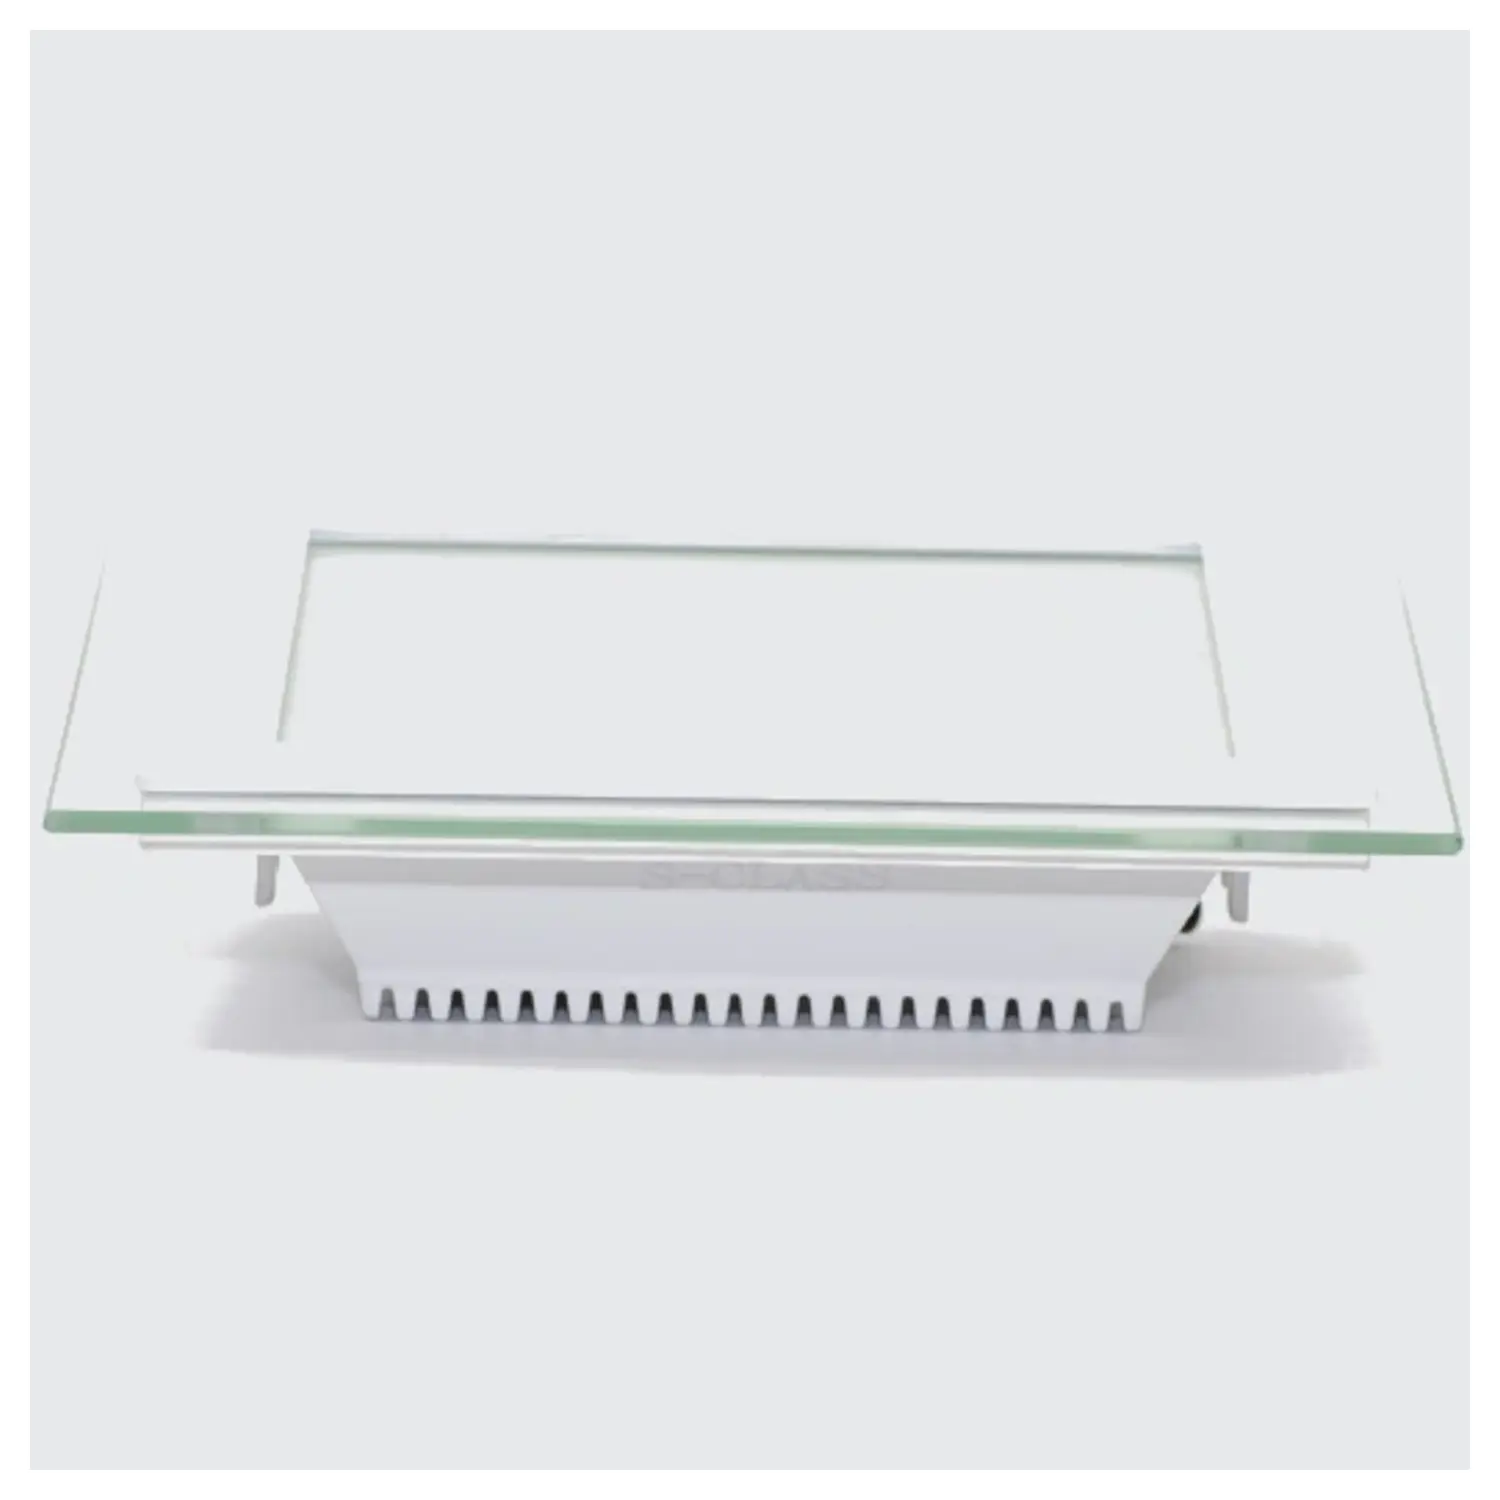 immagine mini pannel incasso cornice vetro tondo IP20 fisso CE bianco caldo bianco 220-240 volt 18 watt 120° tec 622952